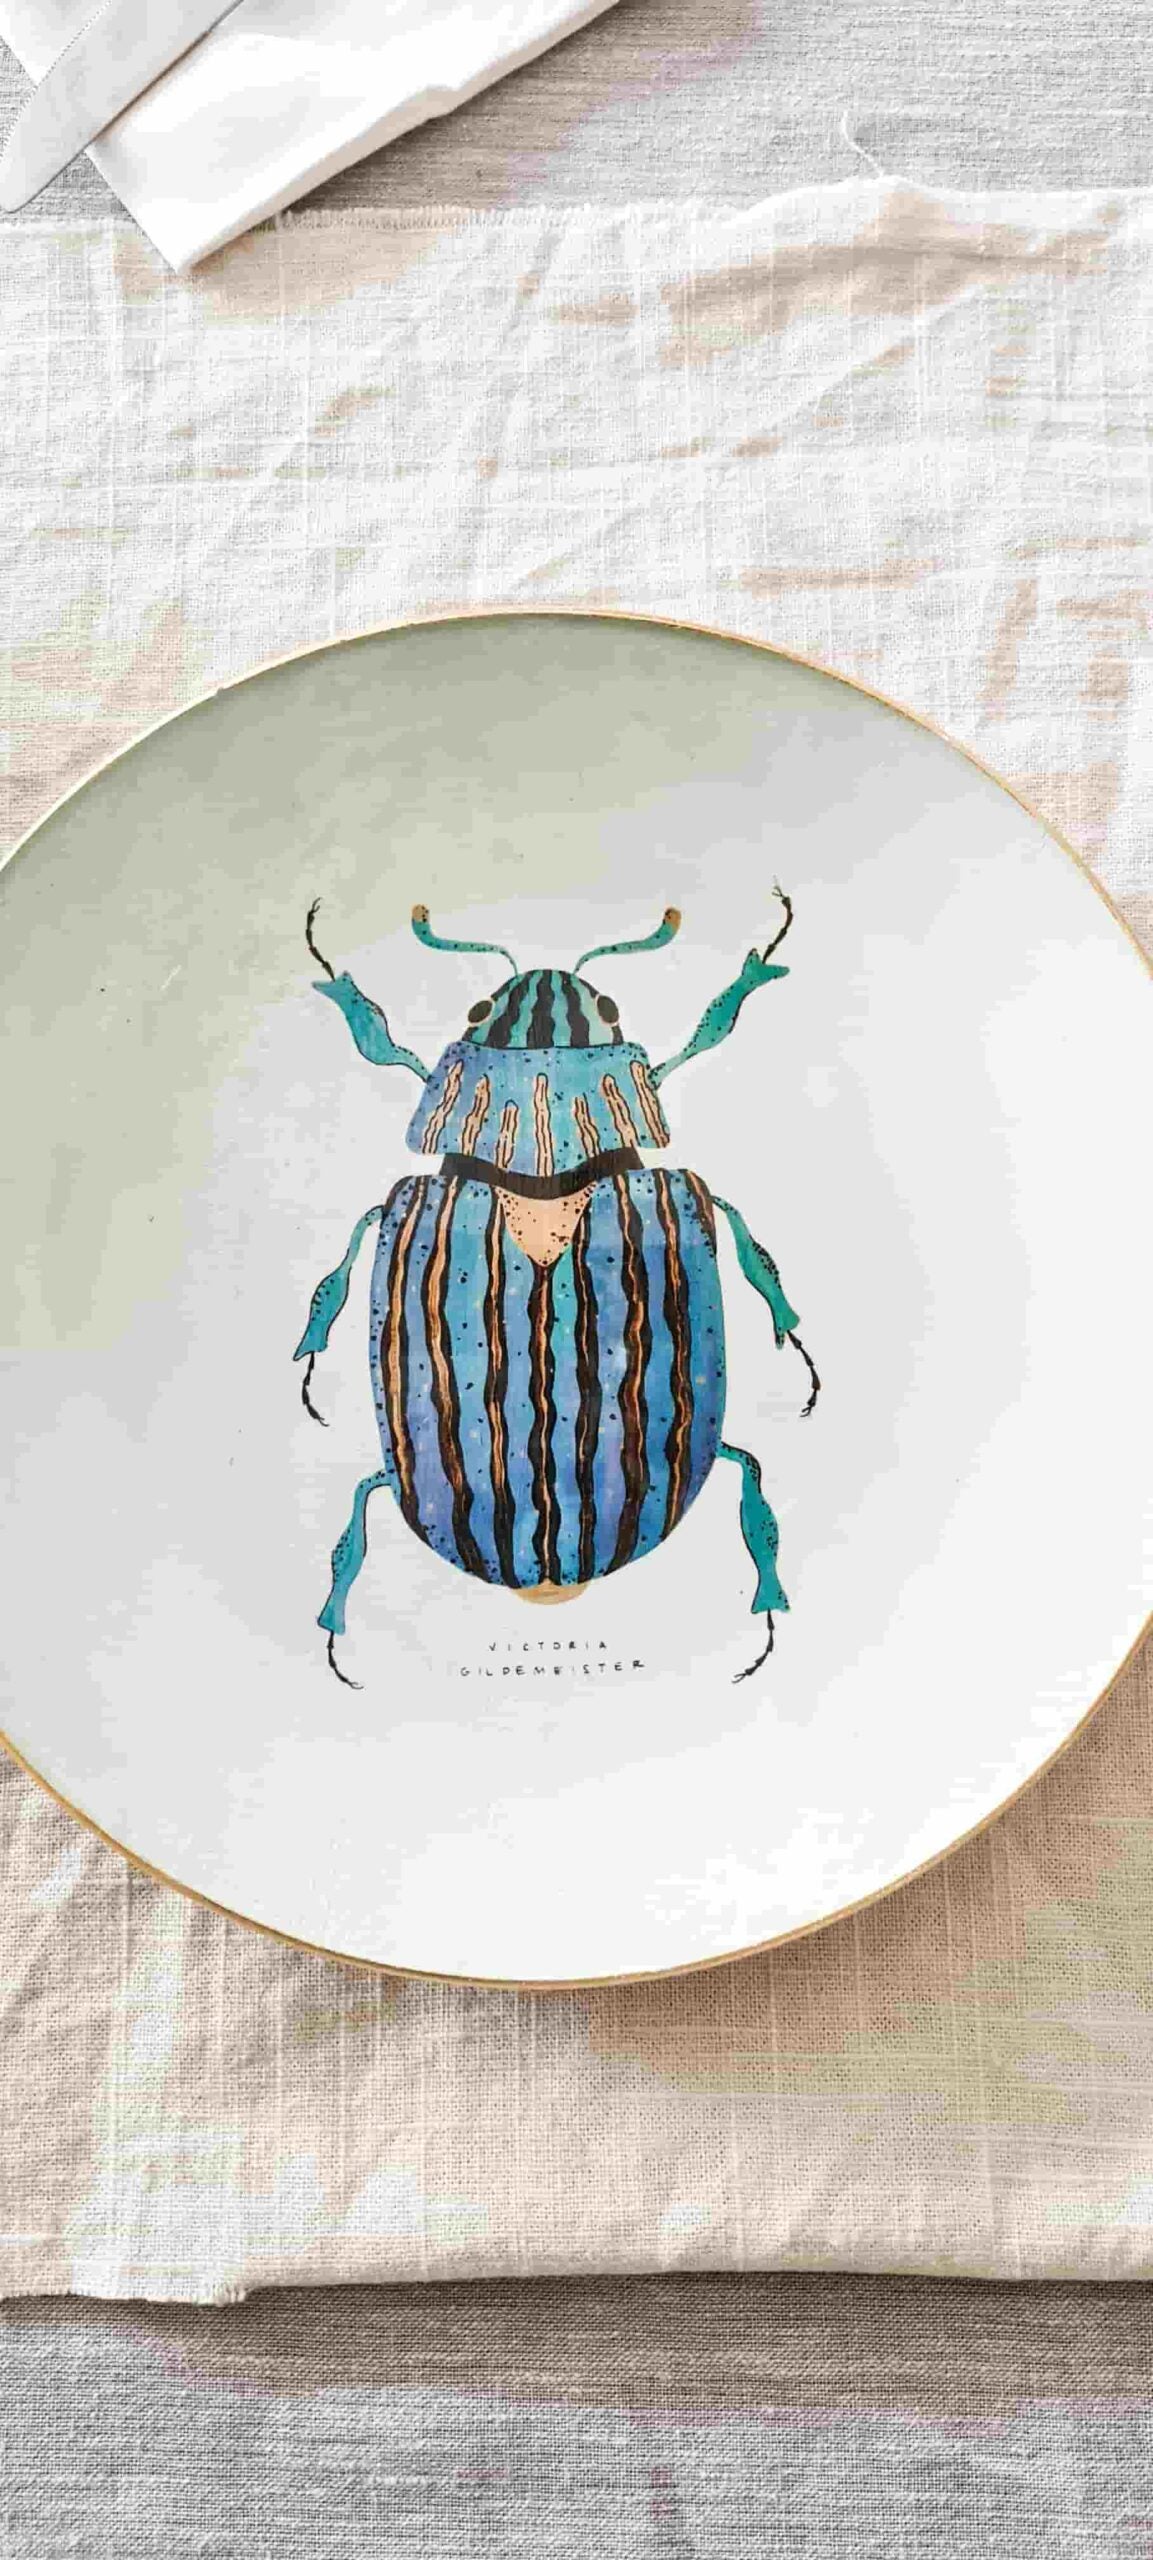 Plato Redondo 25cm Escarabajo Azul